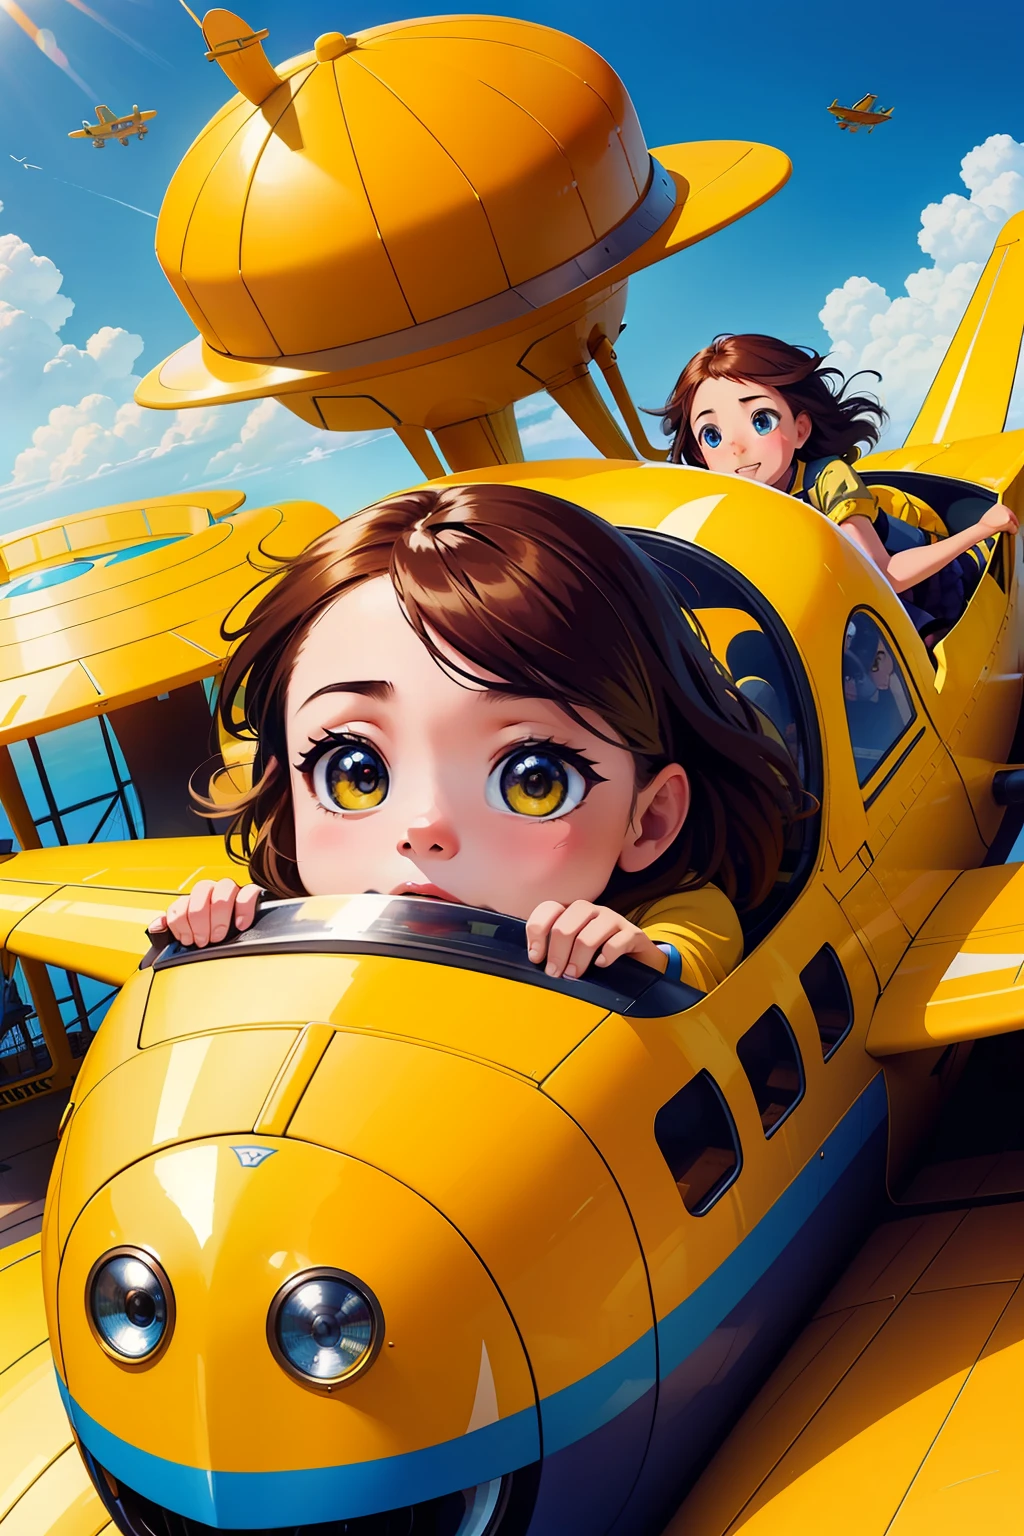 天空中有两个女孩可爱的脸乘坐黄色飞机, 孩子们's, , 飞行汽车, 孩子们, 飞行机械, 游乐园景点, 平面, 快门, 广告照片, 空中, 高架, 特写照片, 特写照片